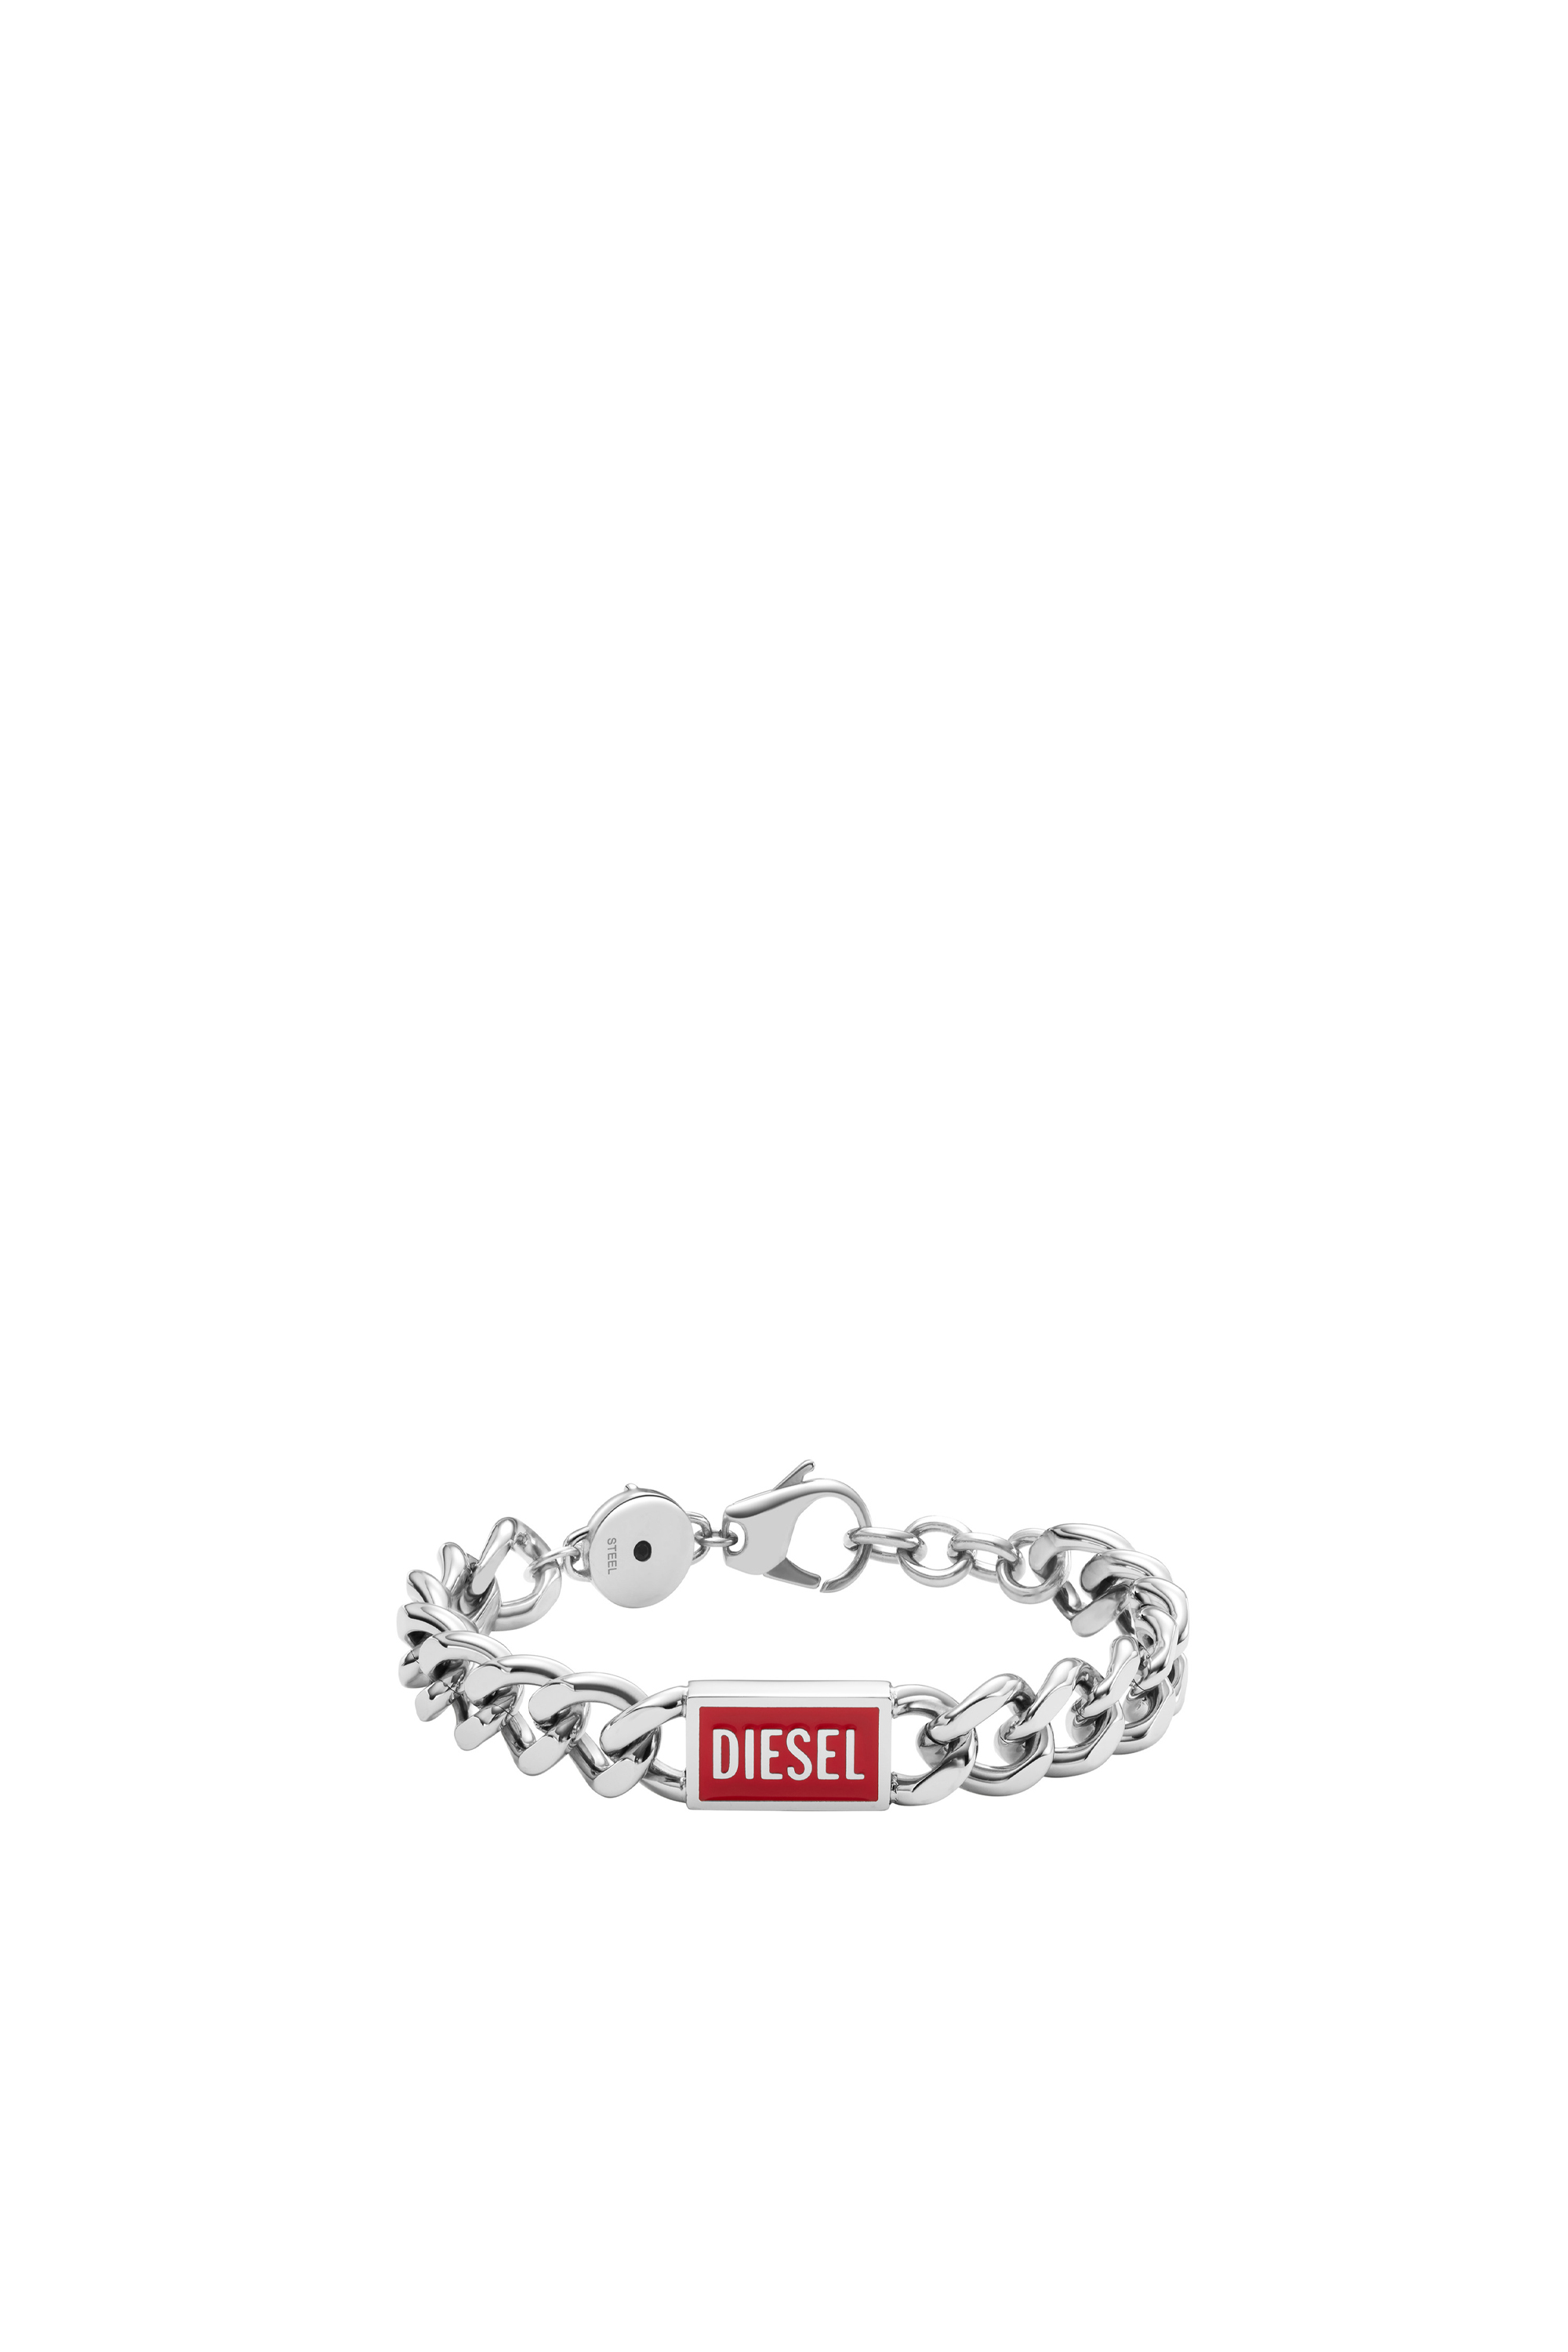 Diesel - Bracelet chaîne en acier inoxydable avec logo - Bracelets - Homme - Gris argenté